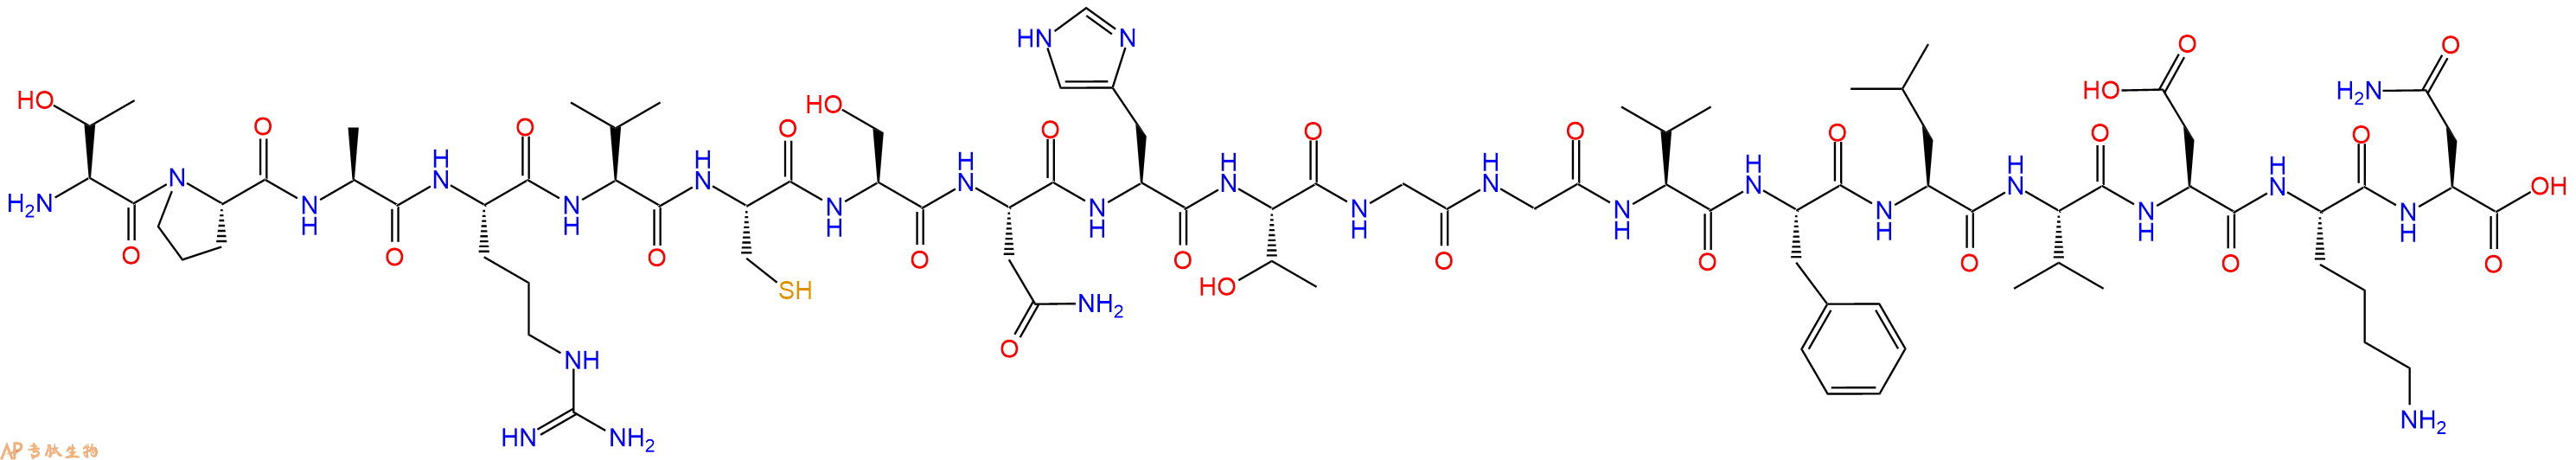 专肽生物产品H2N-Thr-Pro-Ala-Arg-Val-Cys-Ser-Asn-His-Thr-Gly-Gl